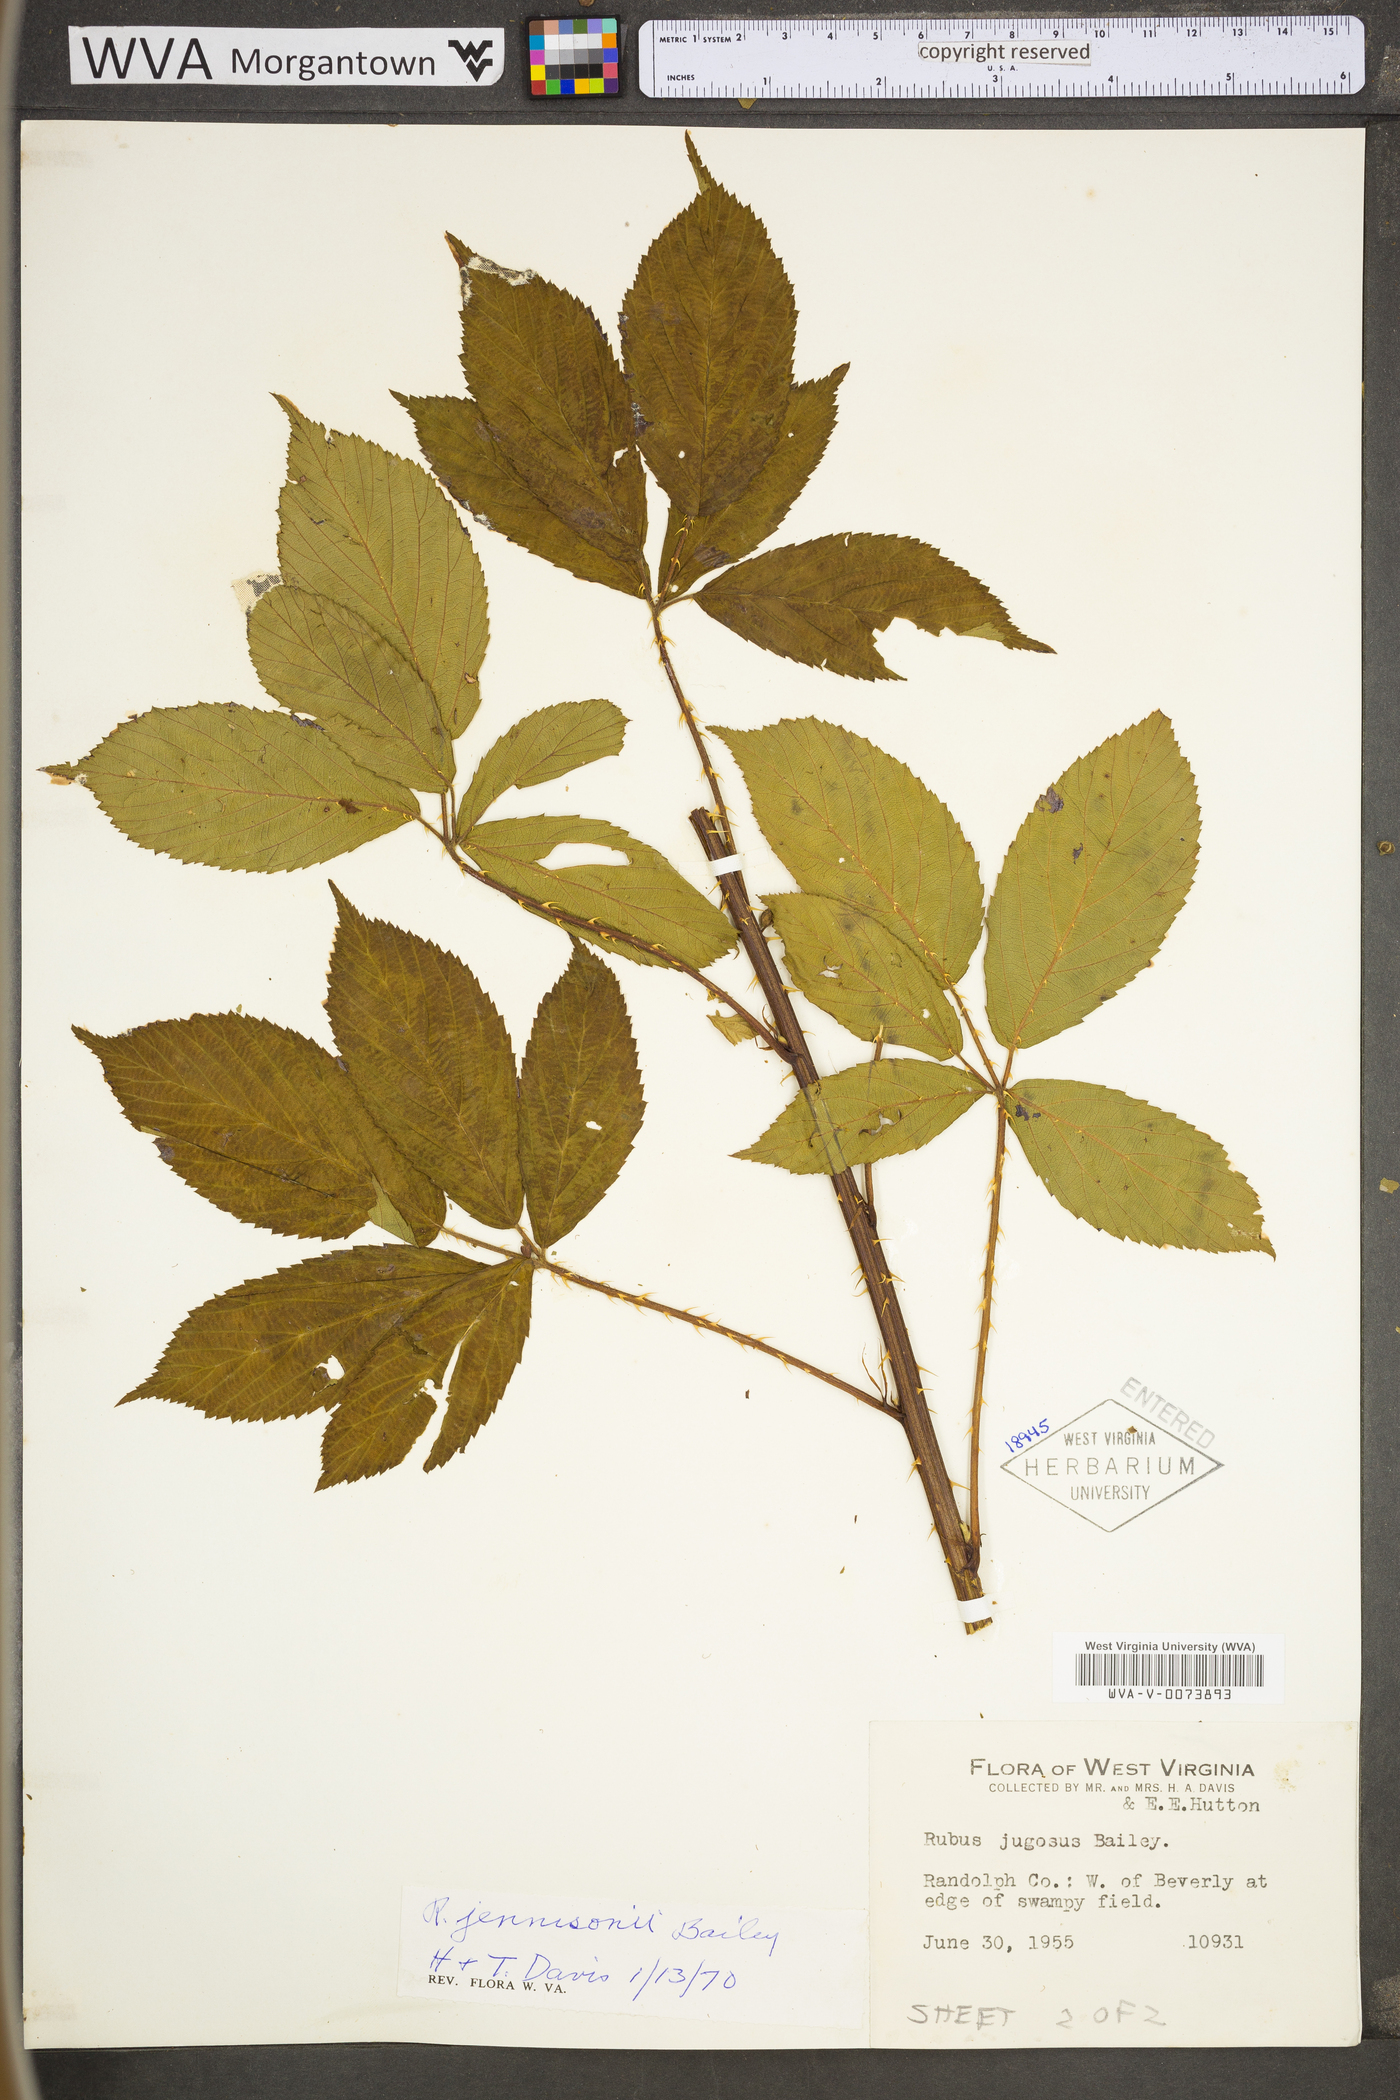 Rubus suus image